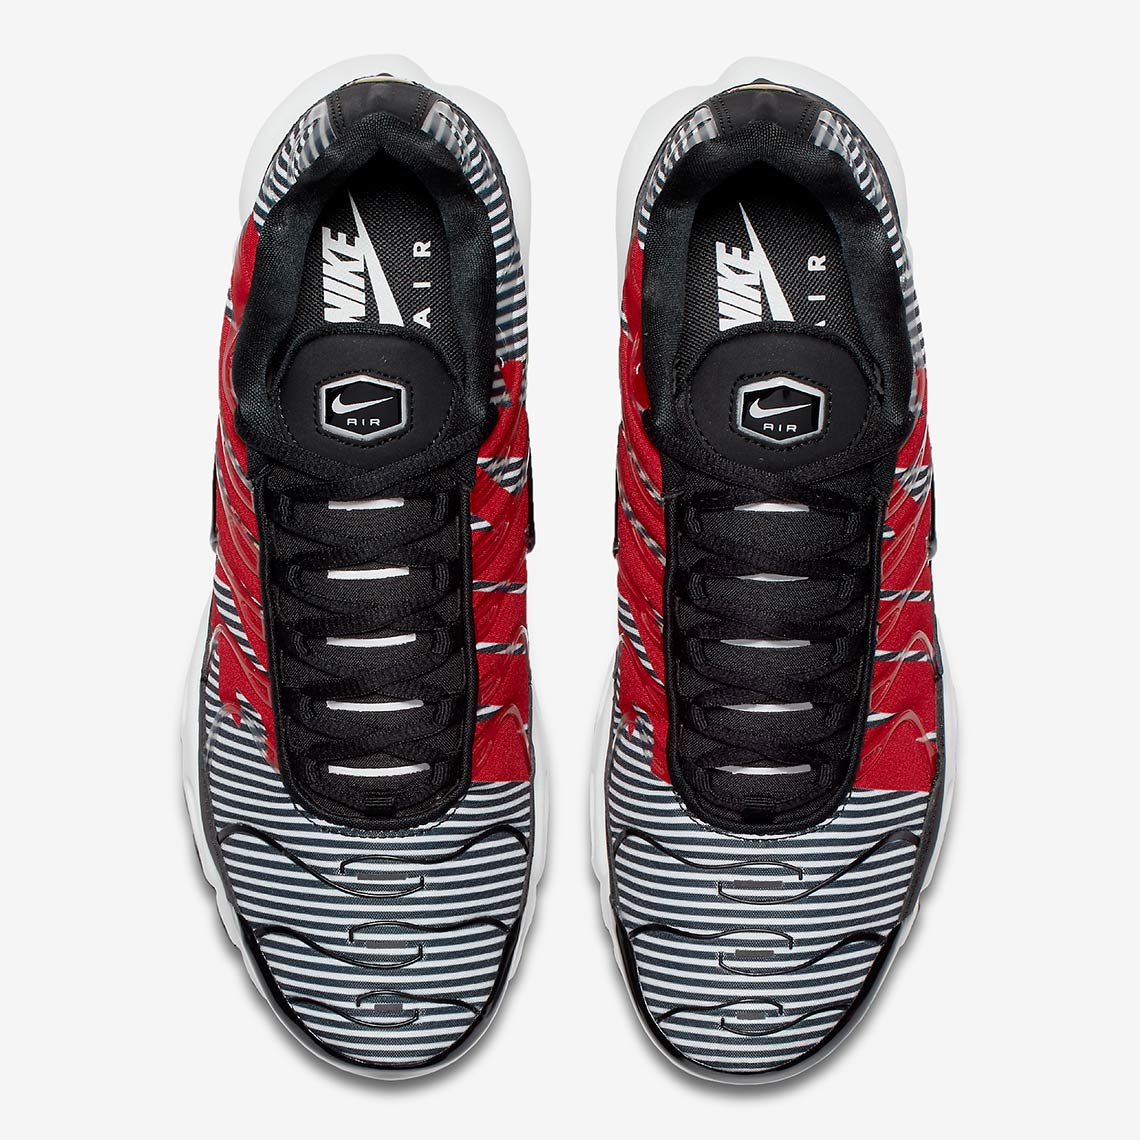 Nike Air Max Plus Mercurial Black Red At0040 001 5